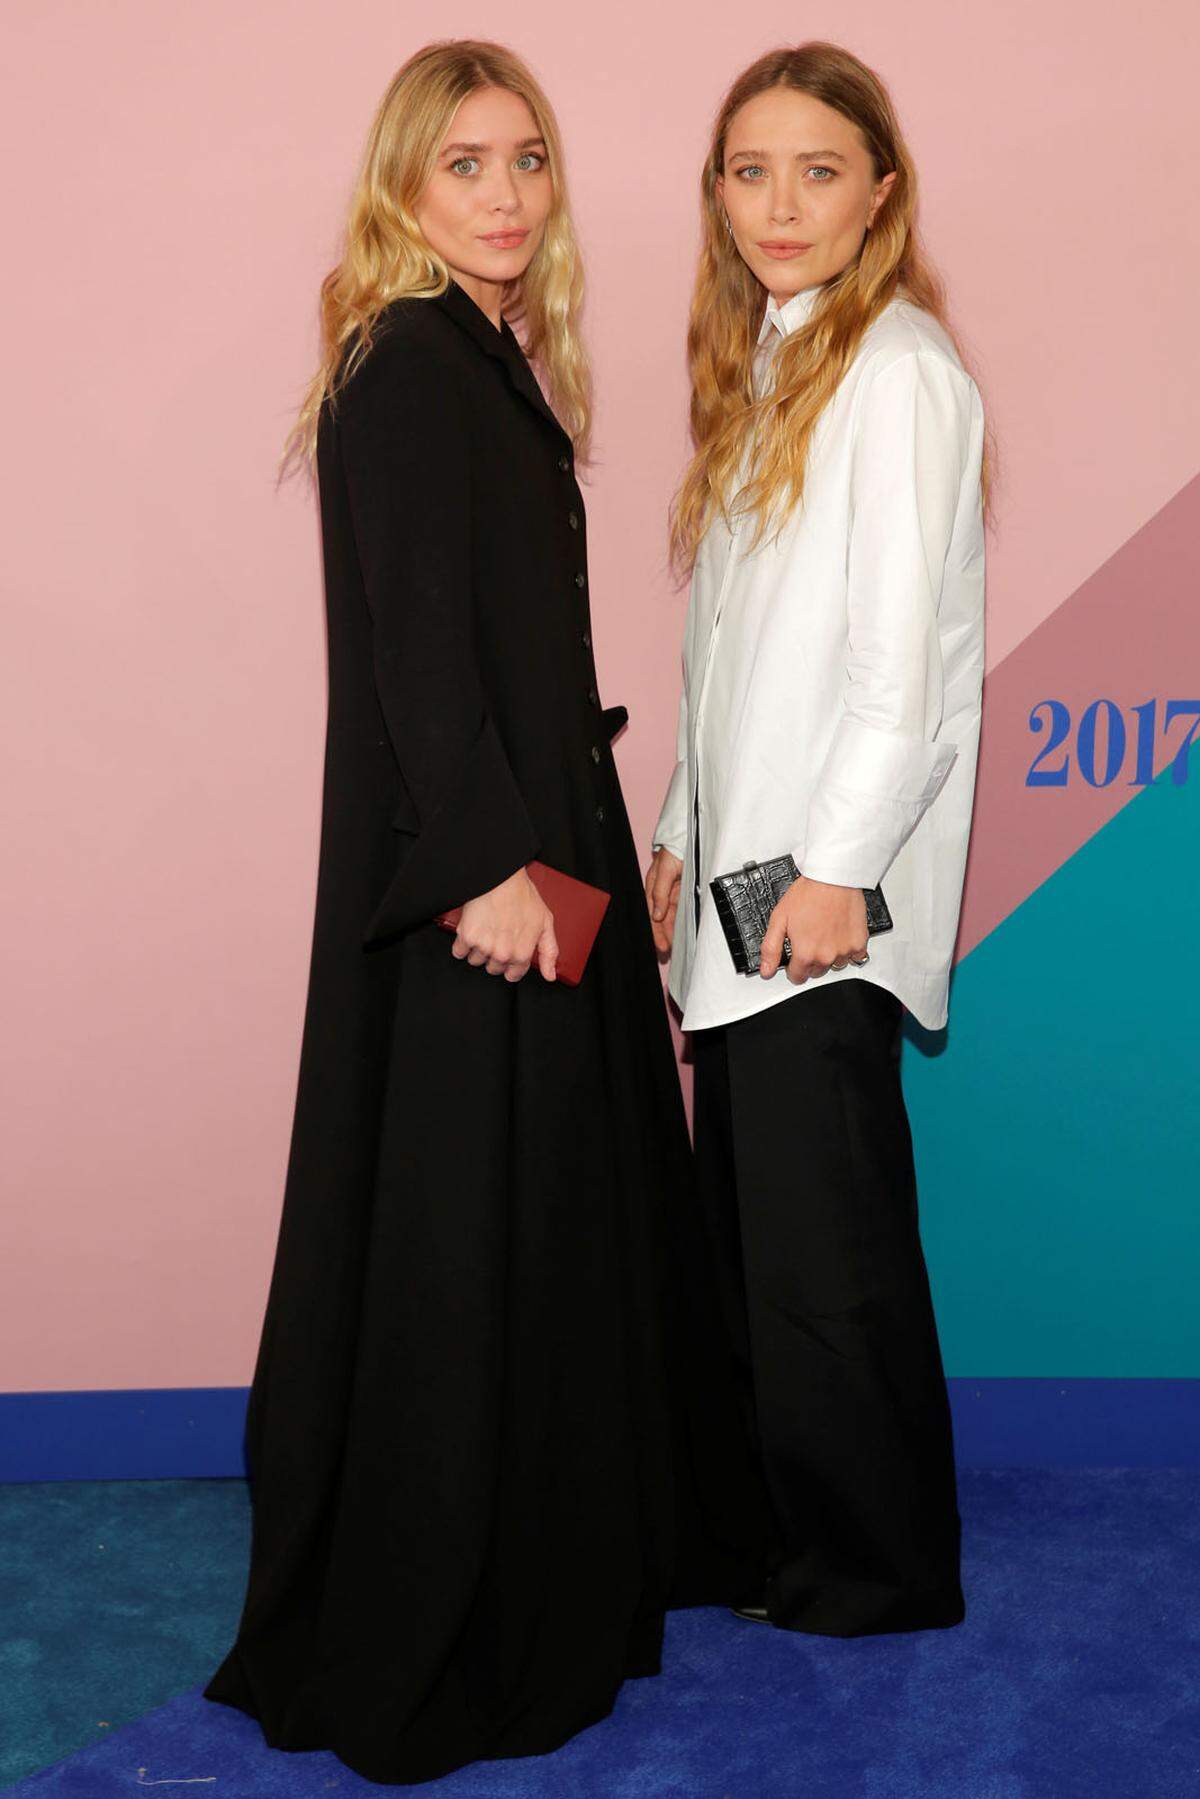 Pittoresk und Oversize: Die berühmten Stilikonen und Modedesignerinnen Ashley Olsen und Mary-Kate Olsen waren auch wieder im Rampenlicht zugegen.